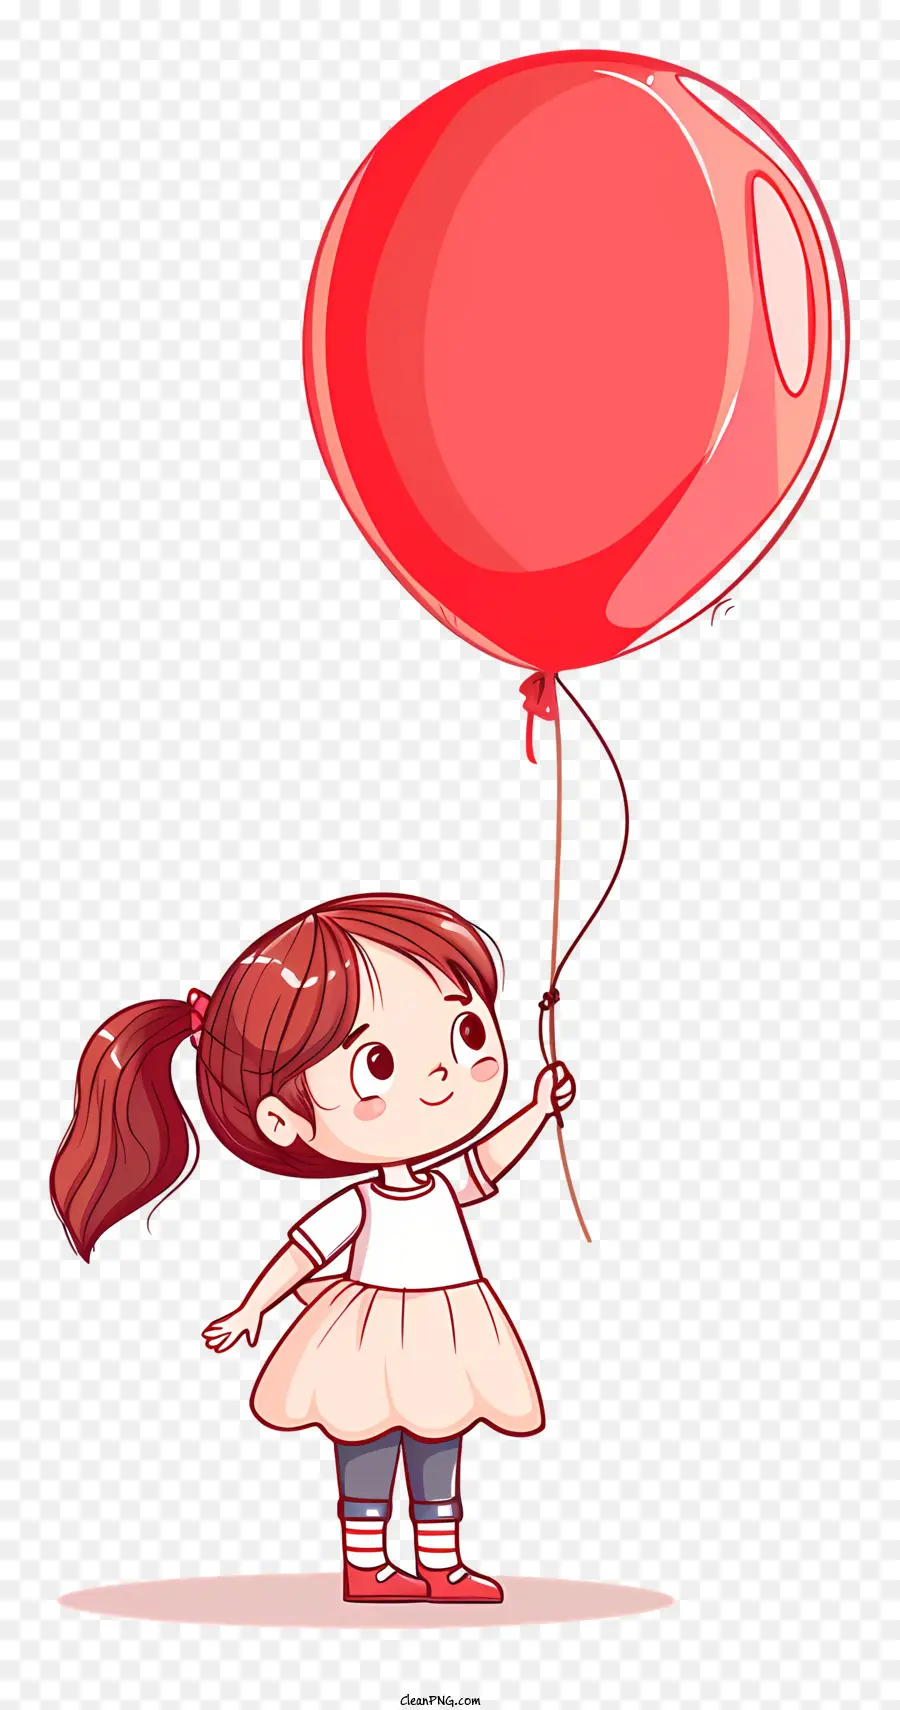 Palloncino Rosso - Giovane ragazza con palloncino rosso sorridente